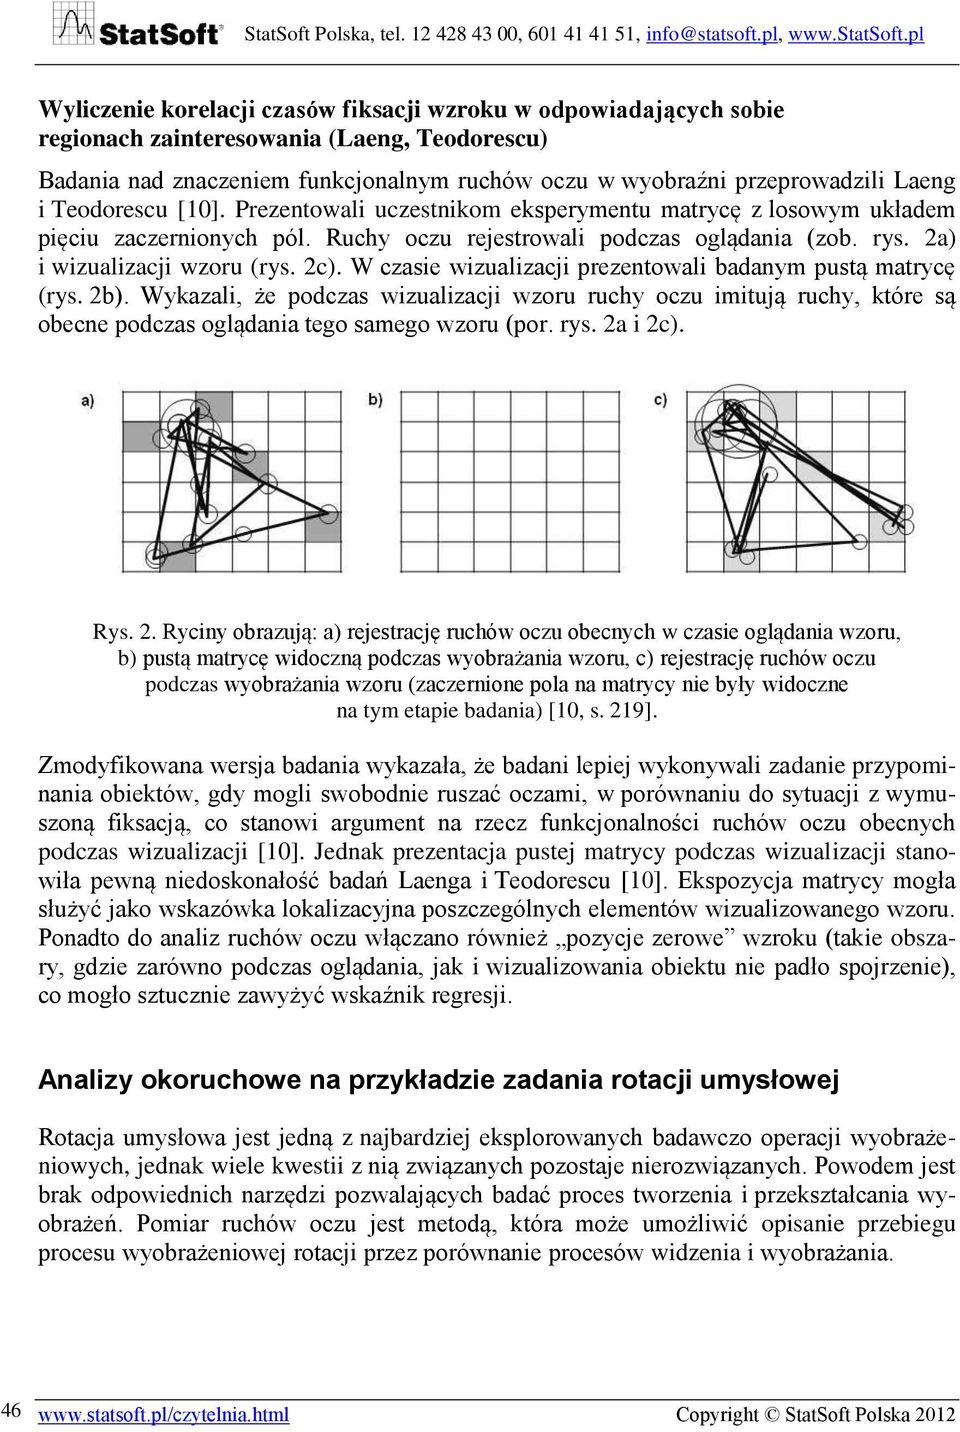 W czasie wizualizacji prezentowali badanym pustą matrycę (rys. 2b). Wykazali, że podczas wizualizacji wzoru ruchy oczu imitują ruchy, które są obecne podczas oglądania tego samego wzoru (por. rys.